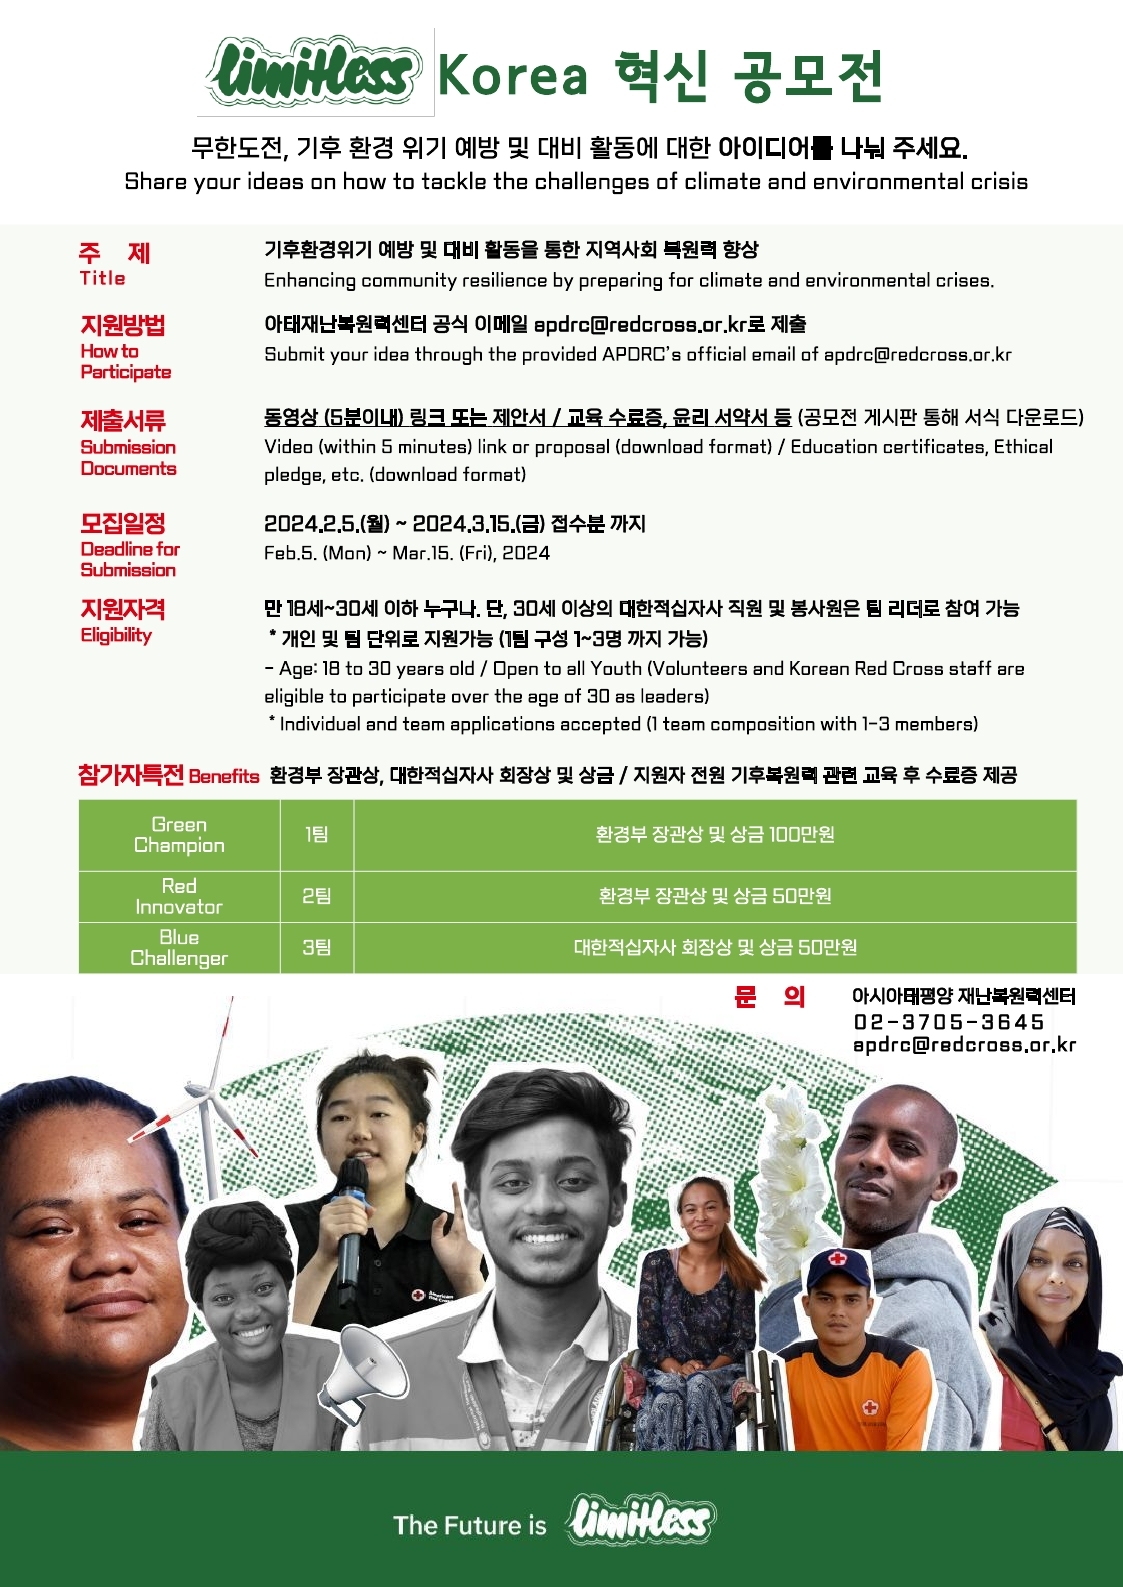 [대한적십자] 제1회 Limitless Korea 혁신 공모전 시행 안내 첨부파일  - 붙임 2. Limitless Korea 혁신 공모전 포스터.pdf_page_1.jpg